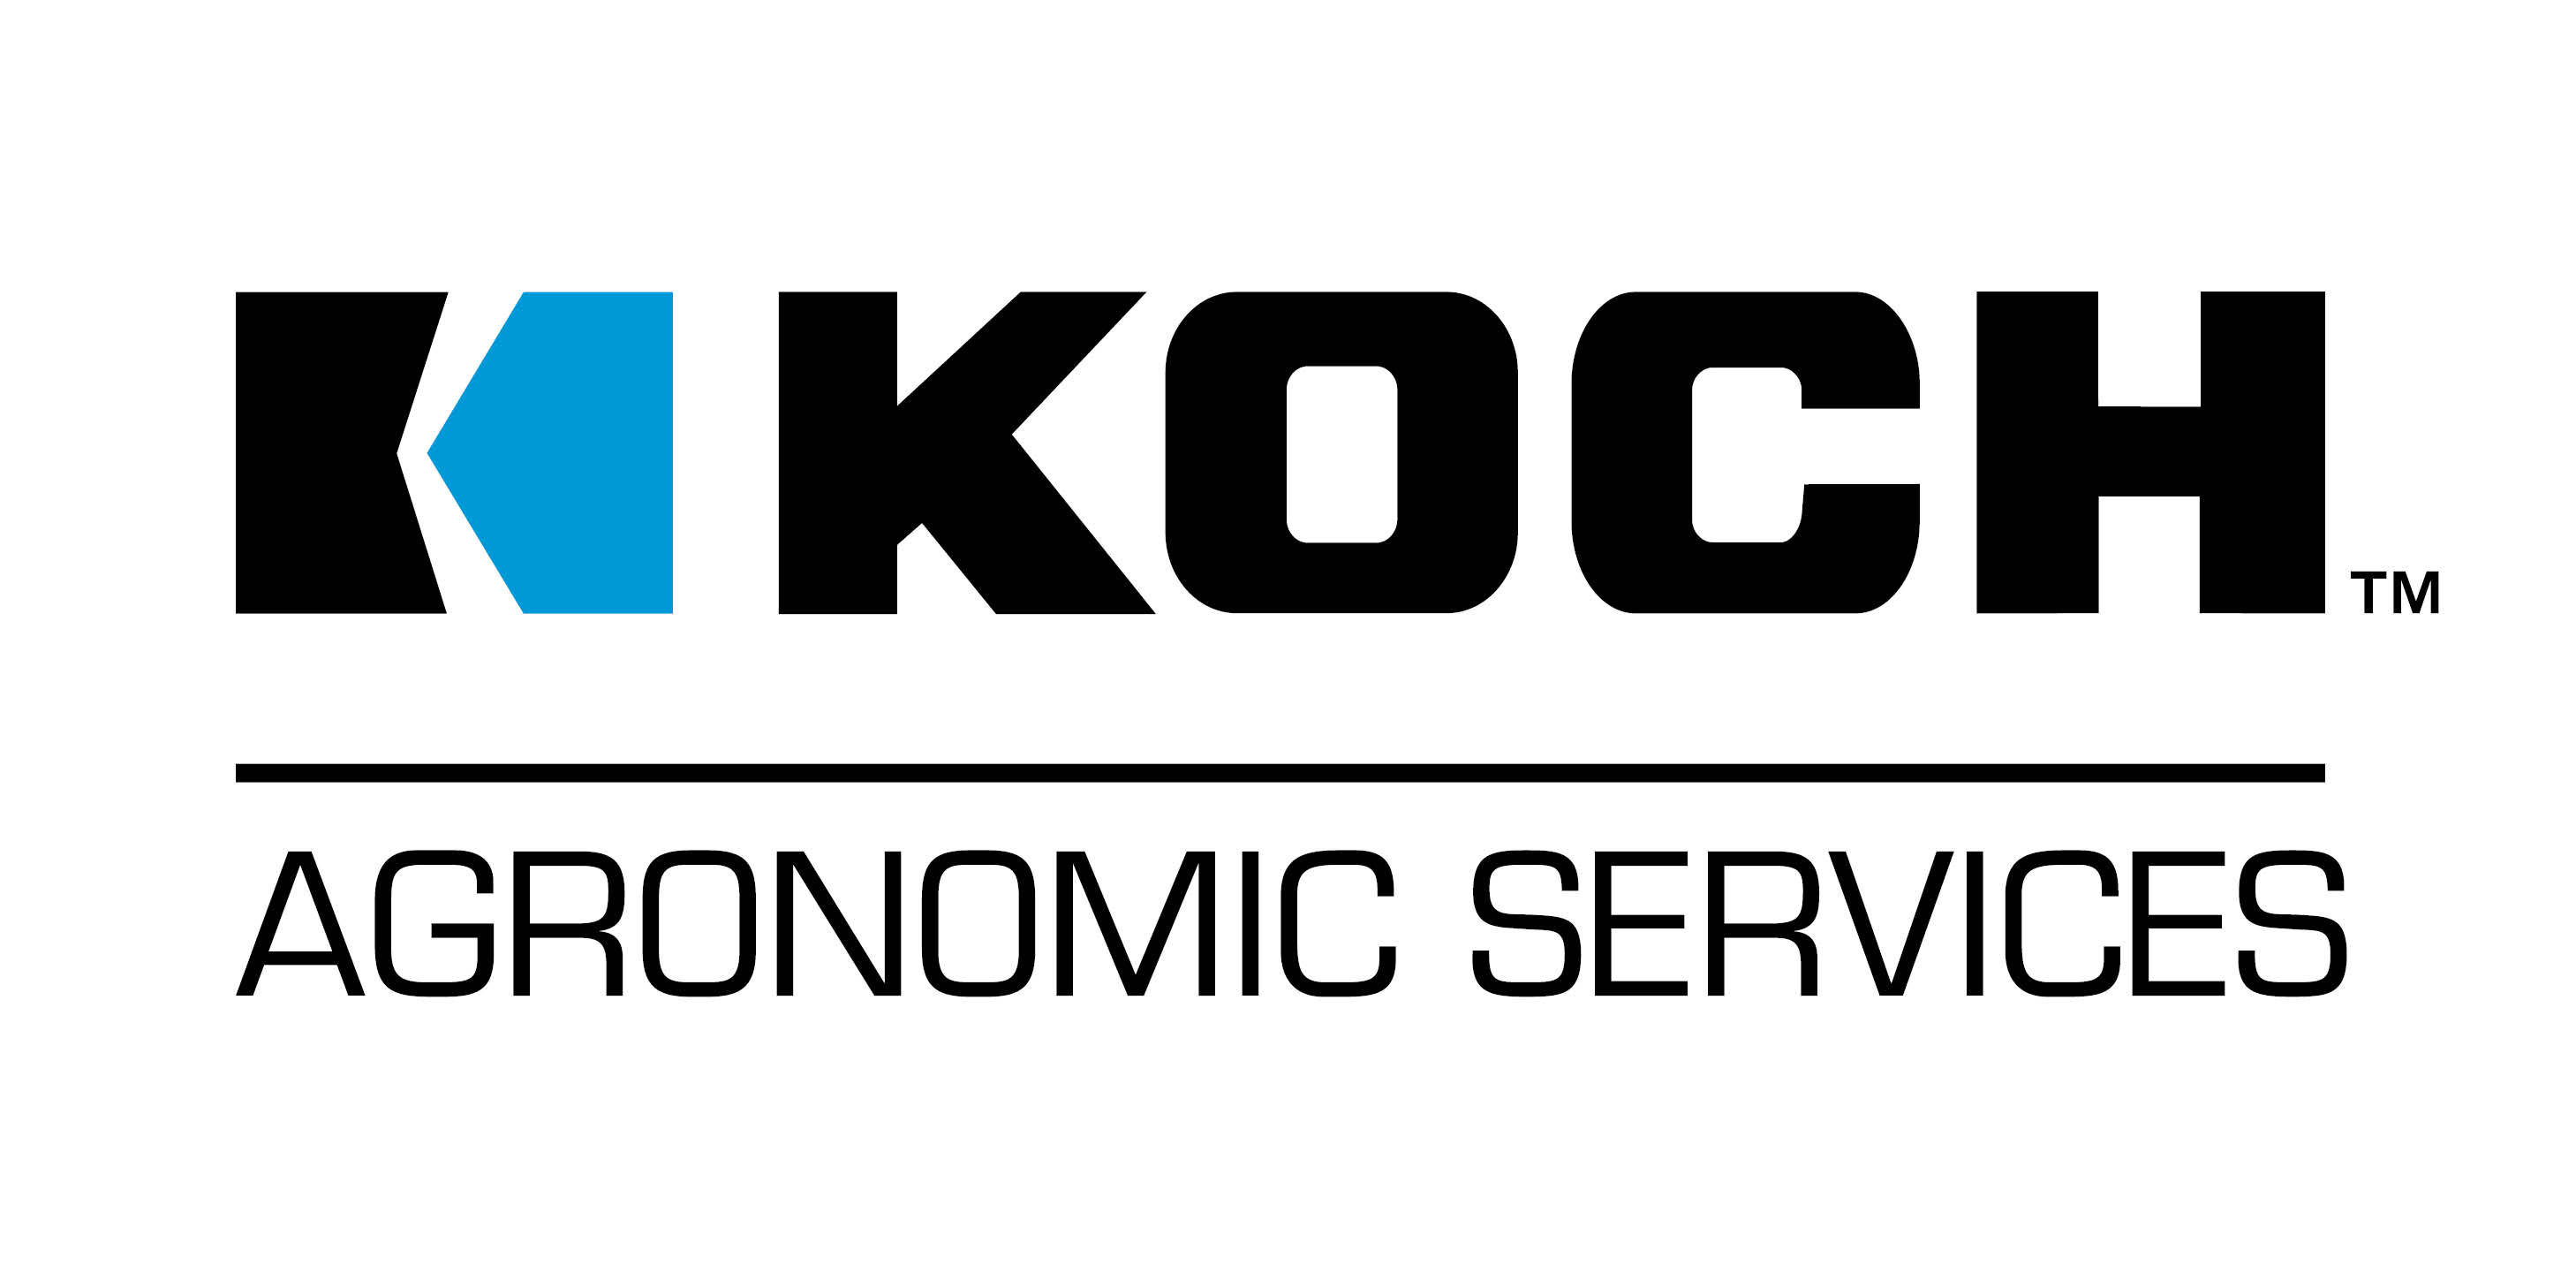 KOCH Logo